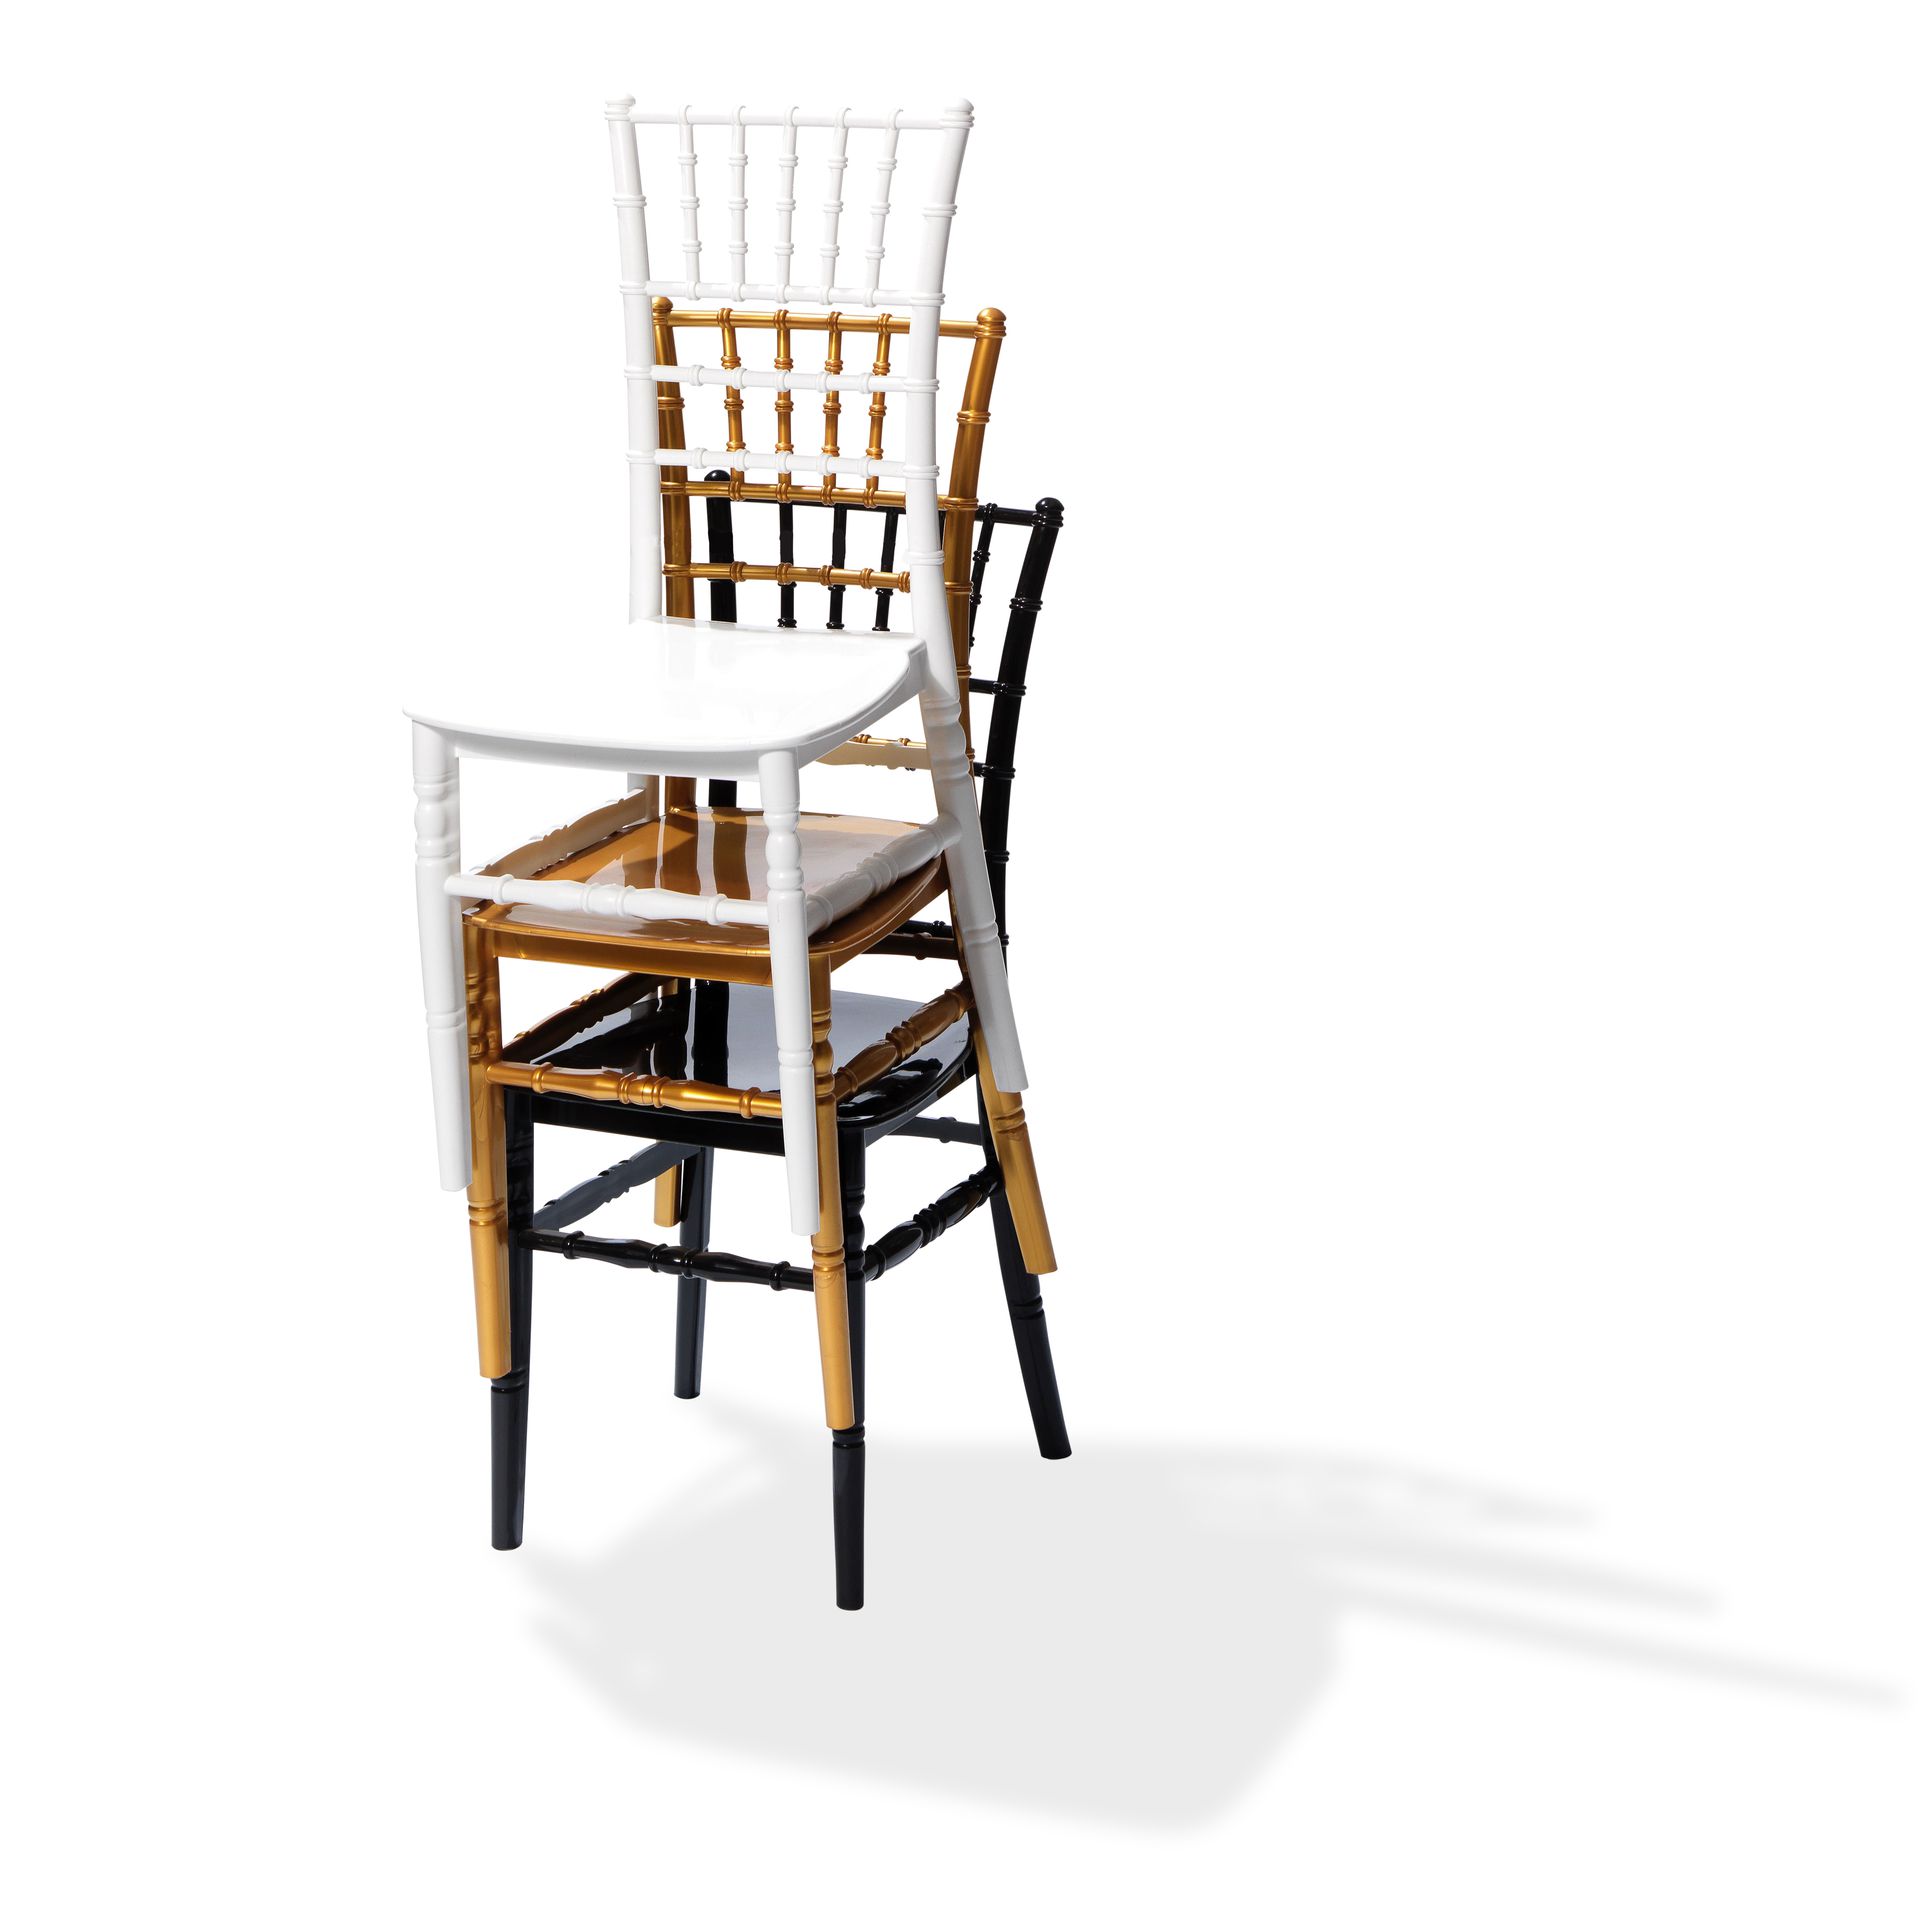 Tiffany chaise empilable Blanc, Polypropylène, 41x43x92cm (BxTxH), incassable, 50410